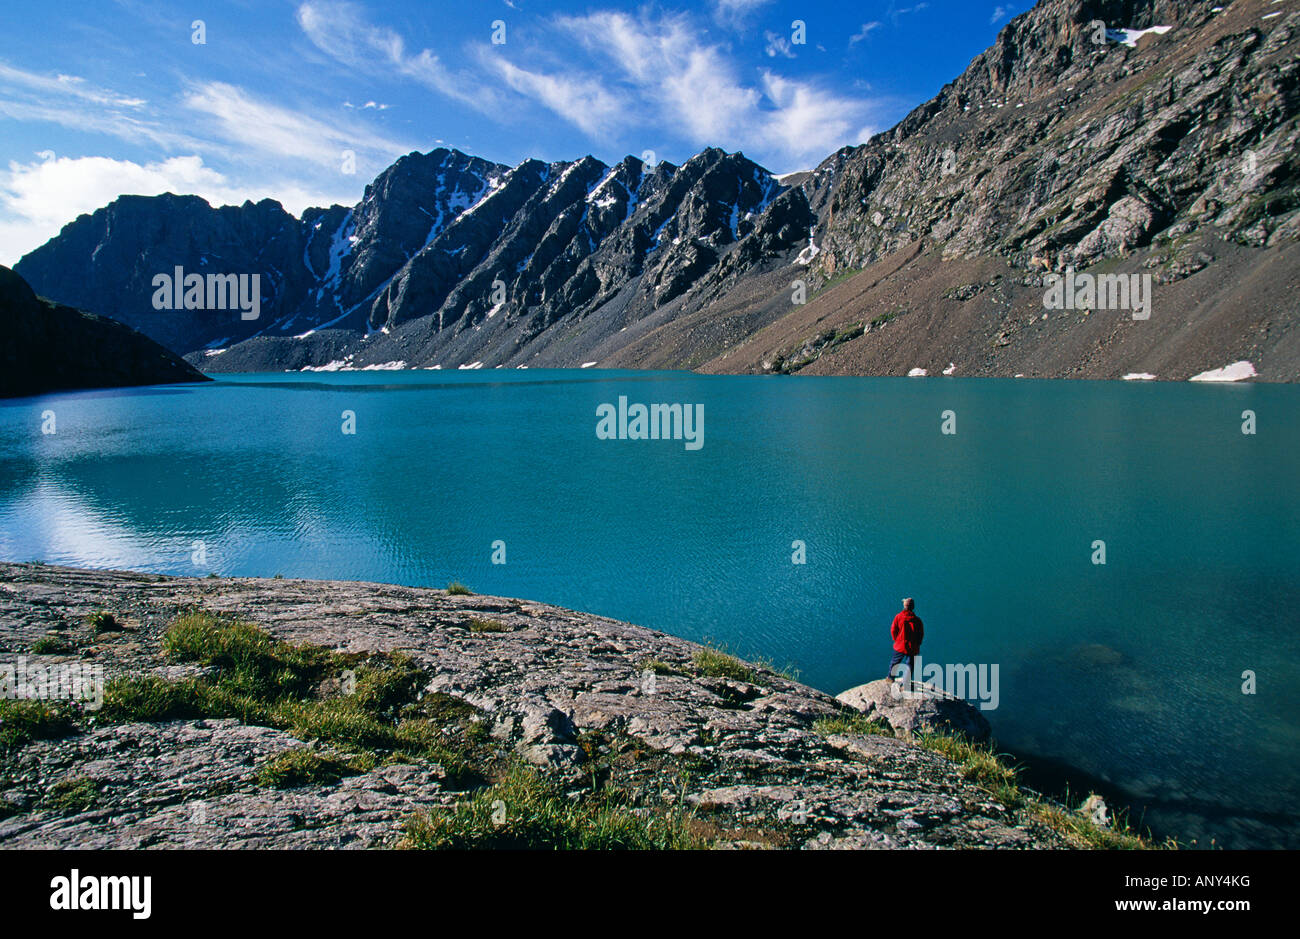 Kirgisistan, Karakol. Ala-Kul-See, einem hoch gelegenen See (3.523 m). Dieser See ist eines der Merkmale entlang der Ala Kul-Trek. Stockfoto